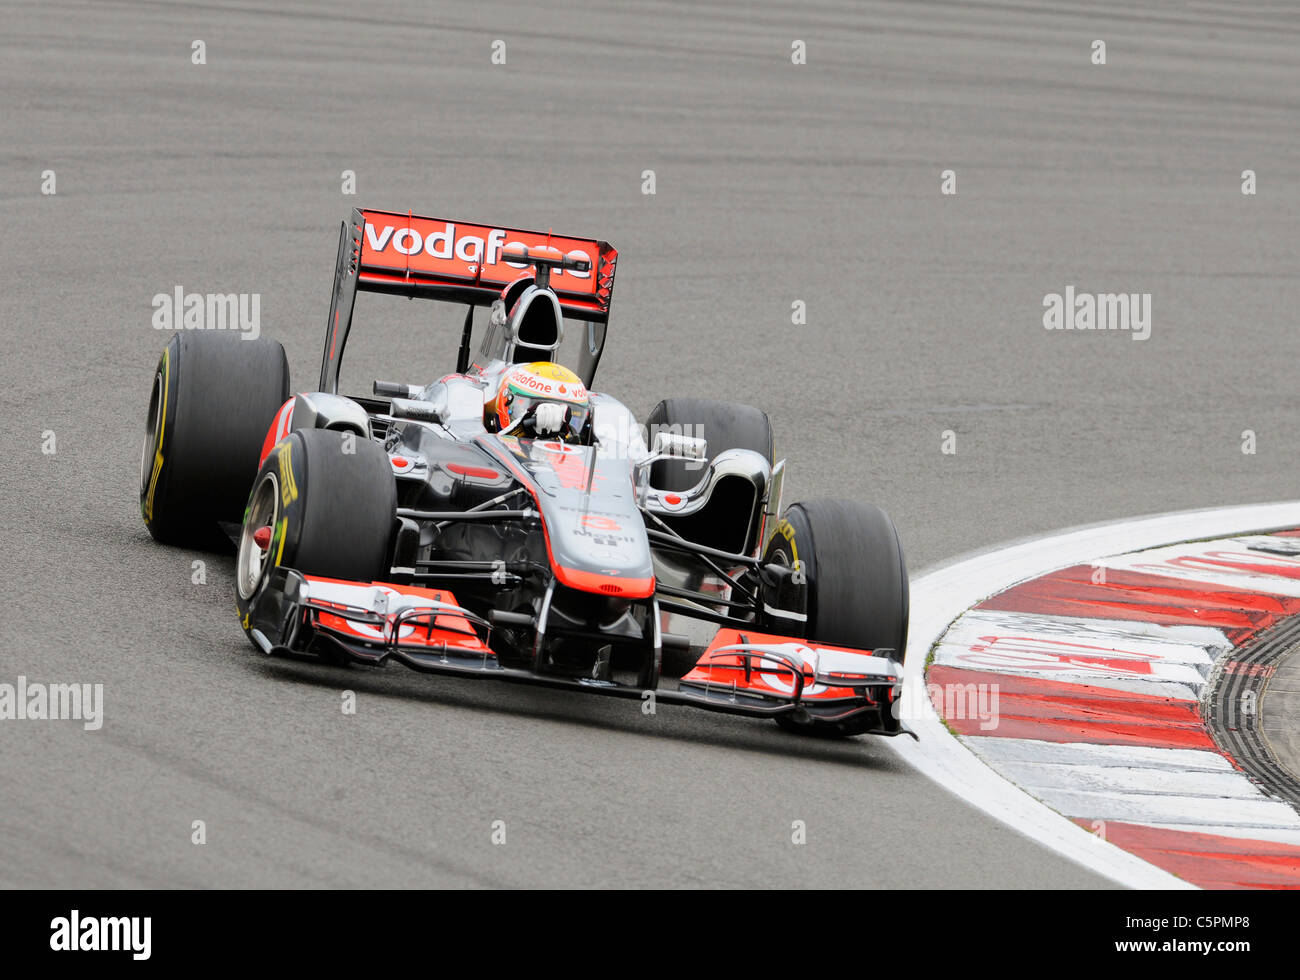 Lewis Hamilton (GBR) McLaren Mercedes, au cours du Grand Prix de Formule 1 Allemand au Nürburgring Banque D'Images